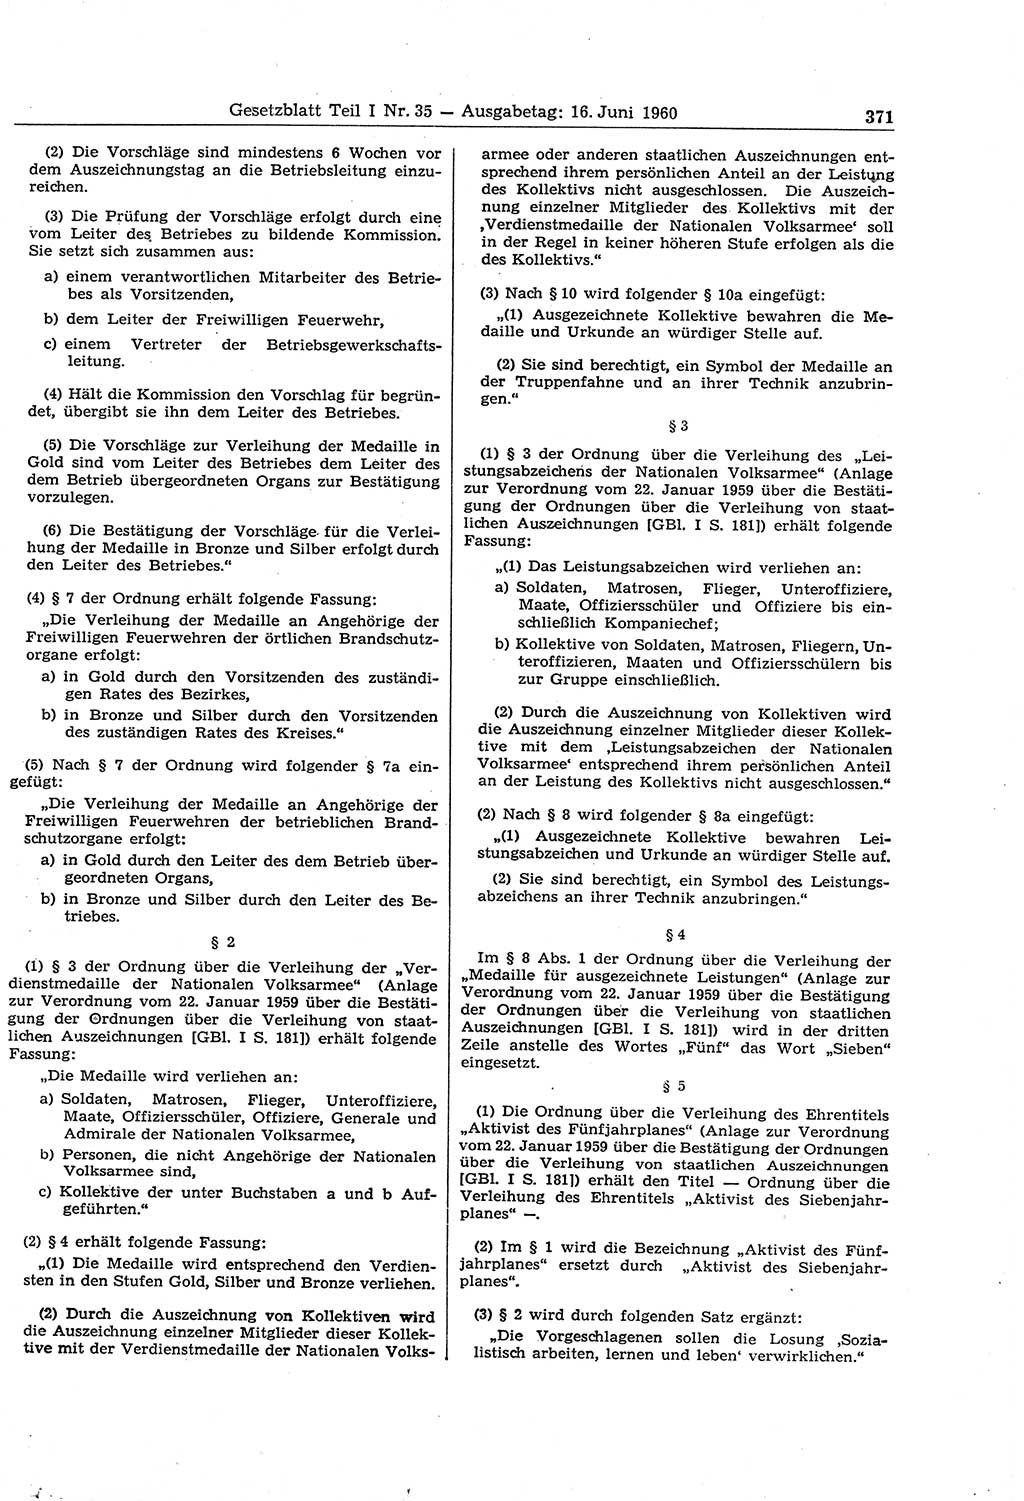 Gesetzblatt (GBl.) der Deutschen Demokratischen Republik (DDR) Teil Ⅰ 1960, Seite 371 (GBl. DDR Ⅰ 1960, S. 371)